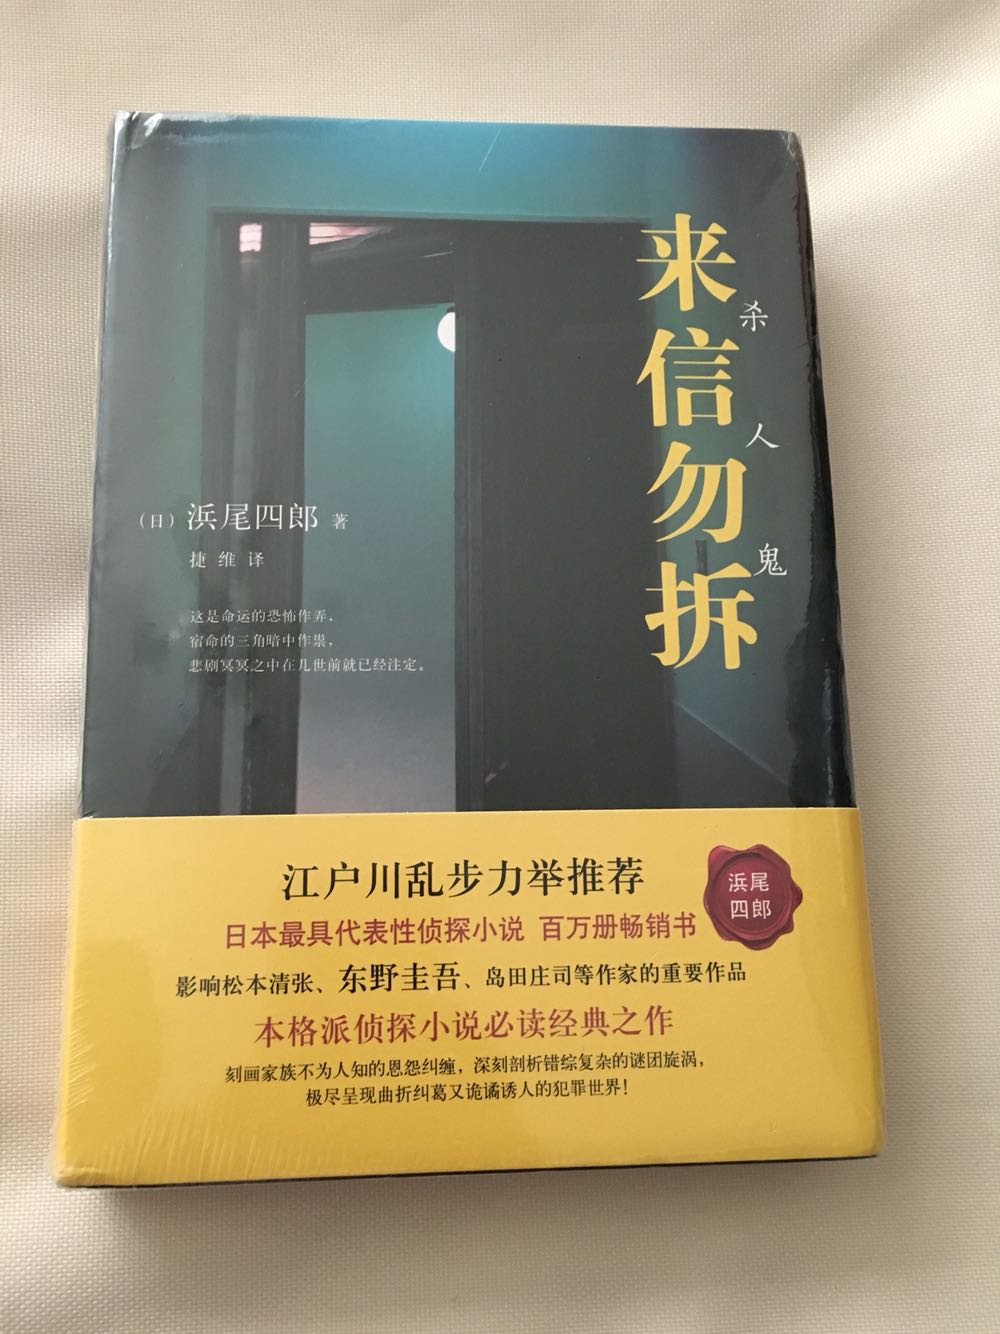 江户川乱步推荐，看评价不错，据说也影响了日本很多小说家，买来慢慢读